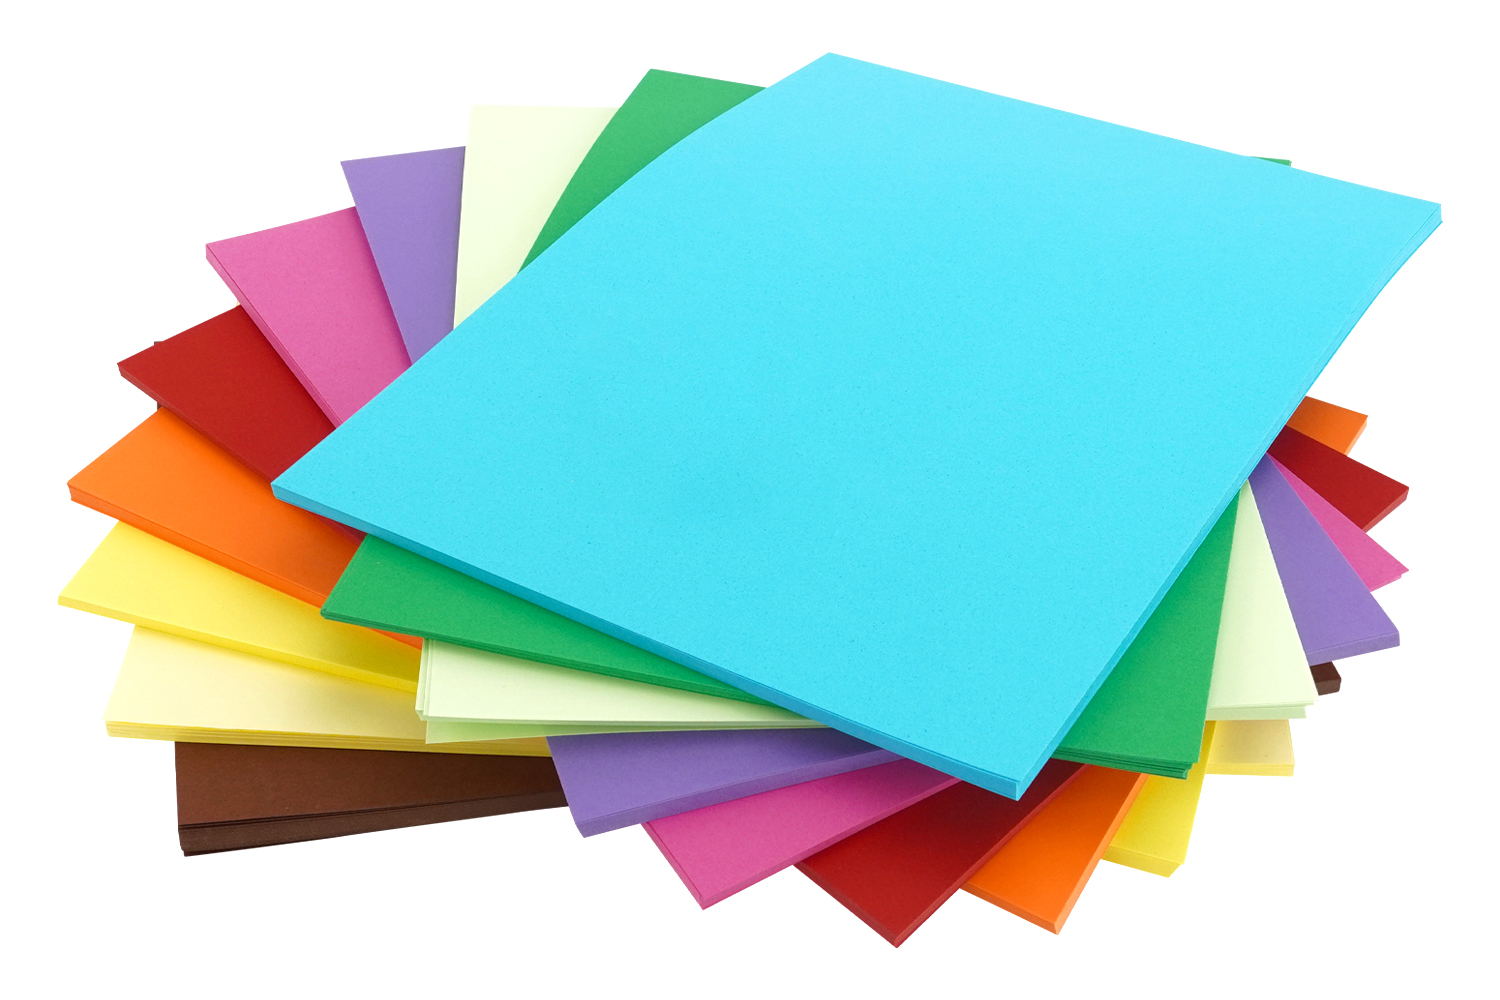 Papier couleur format A4 - 500 feuilles - Papiers Format A4 - 10